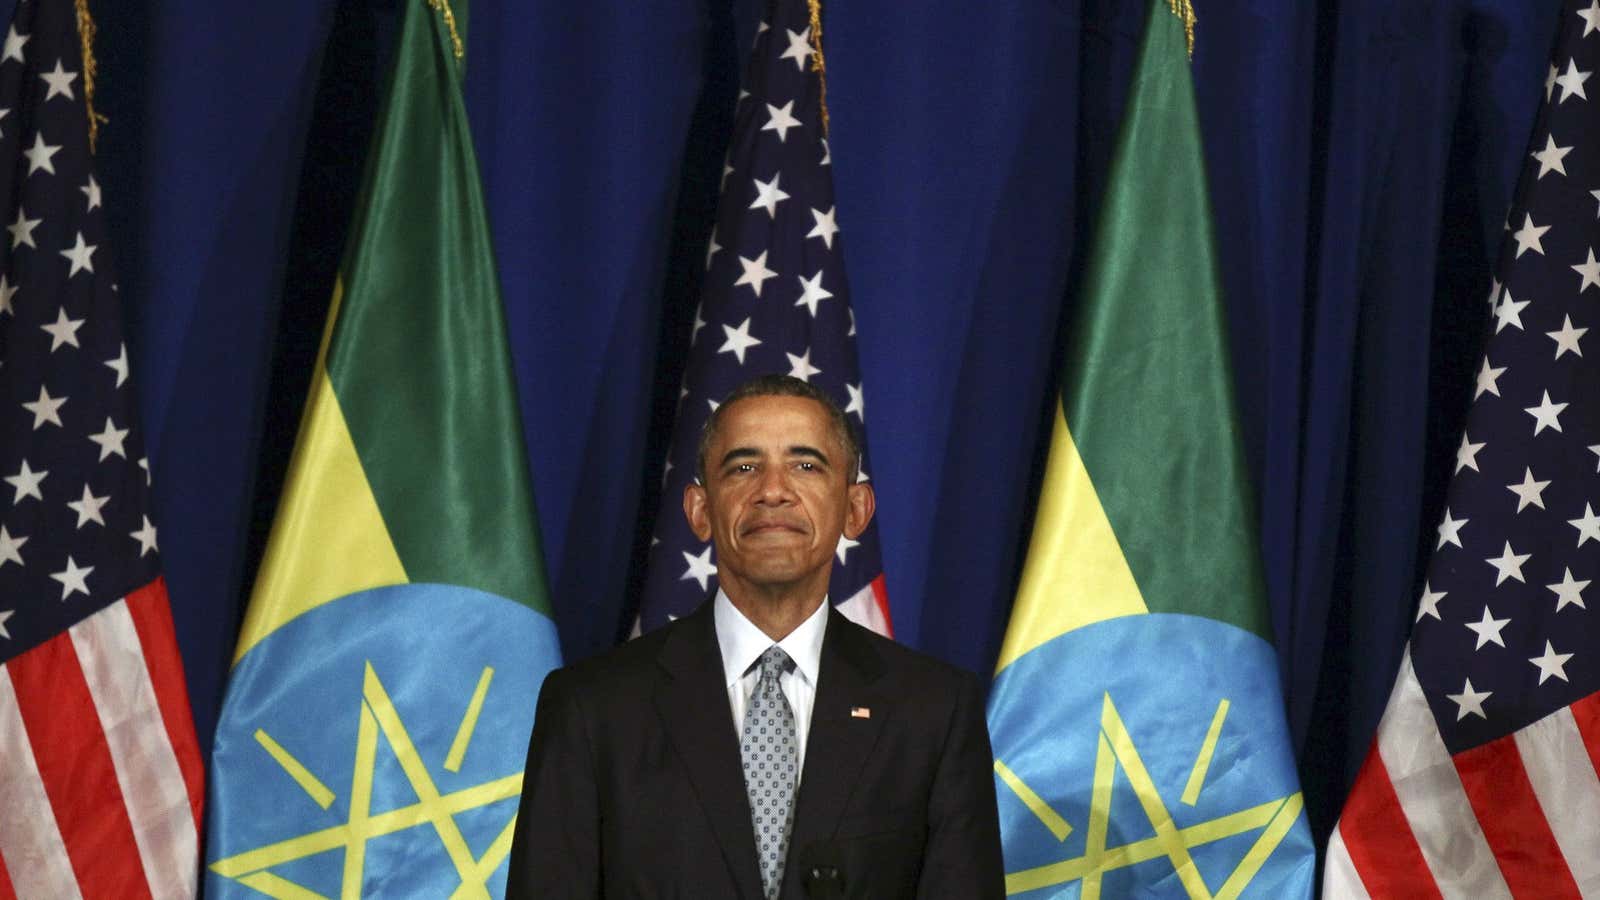 US president Barack Obama speaks at the National Palace in Addis Ababa, Ethiopia.